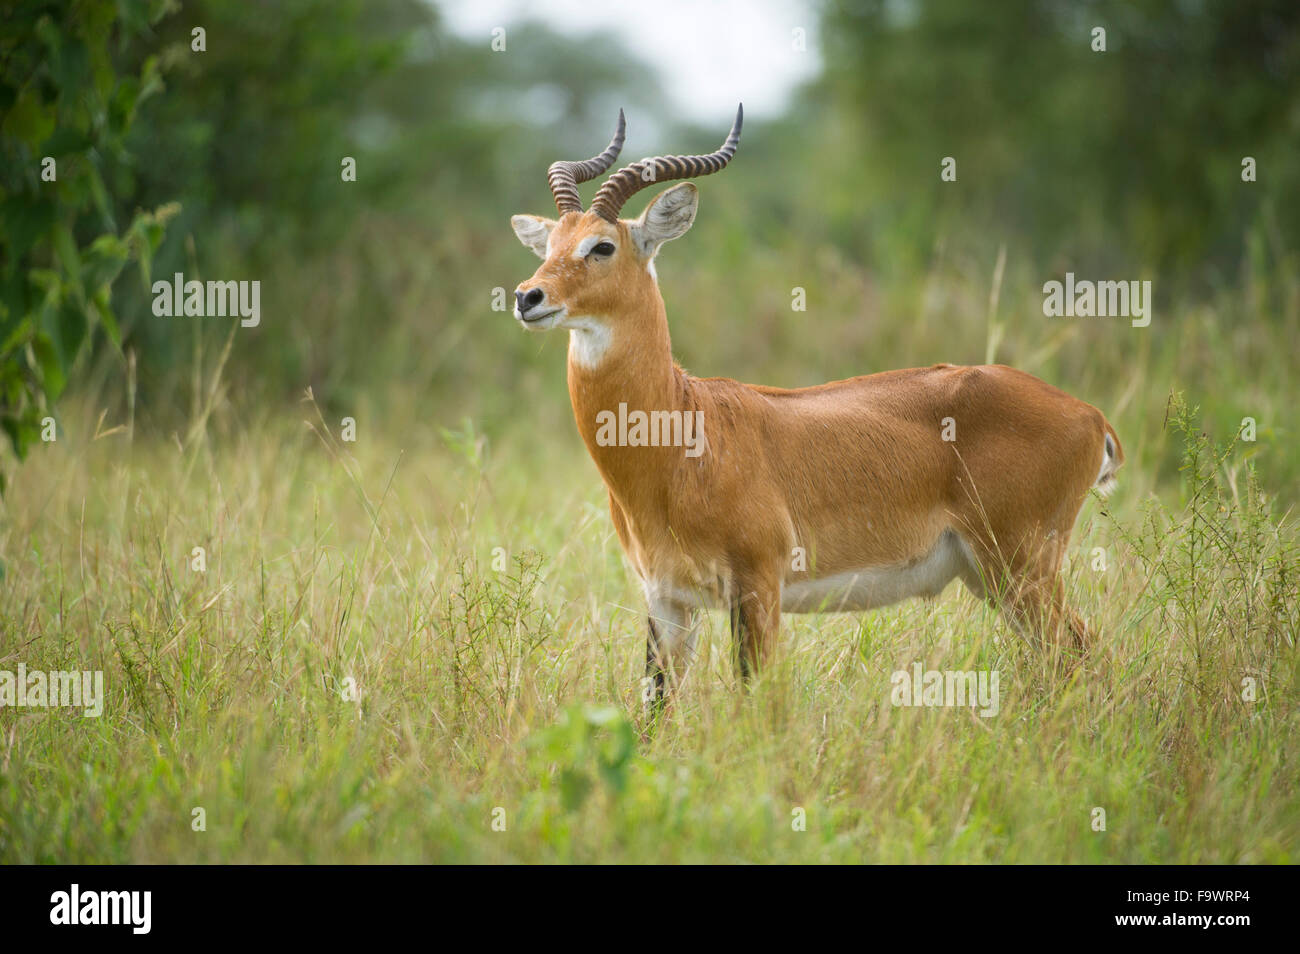 Uganda kob (Kobus kob), Semliki Wildlife Reserve, Uganda Stock Photo